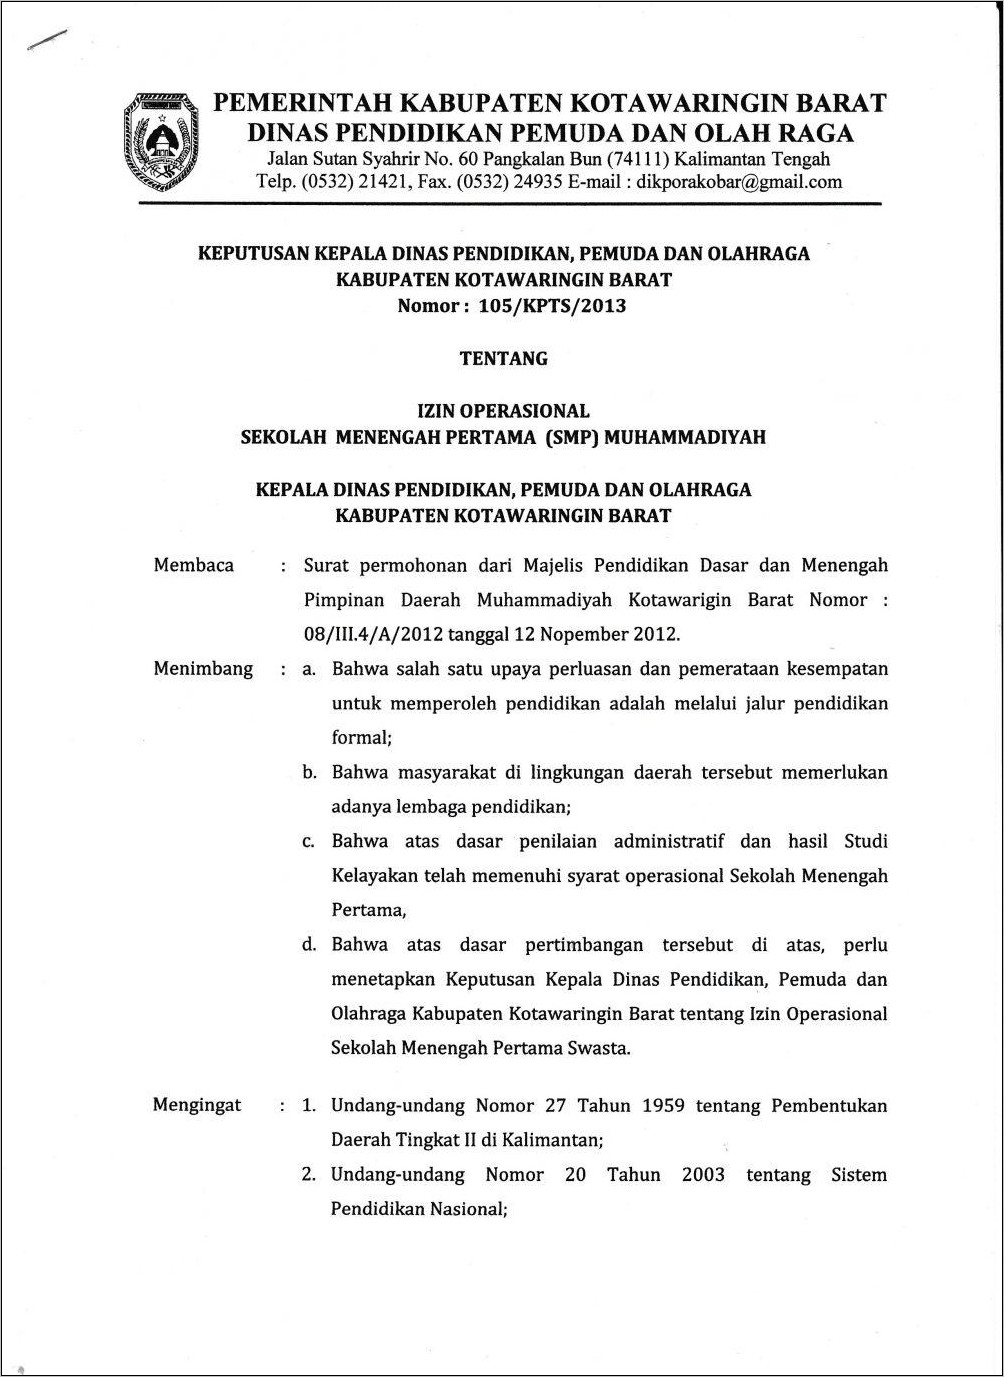 Contoh Surat Kerja Sma Dengan Pdm Muhammadiyah